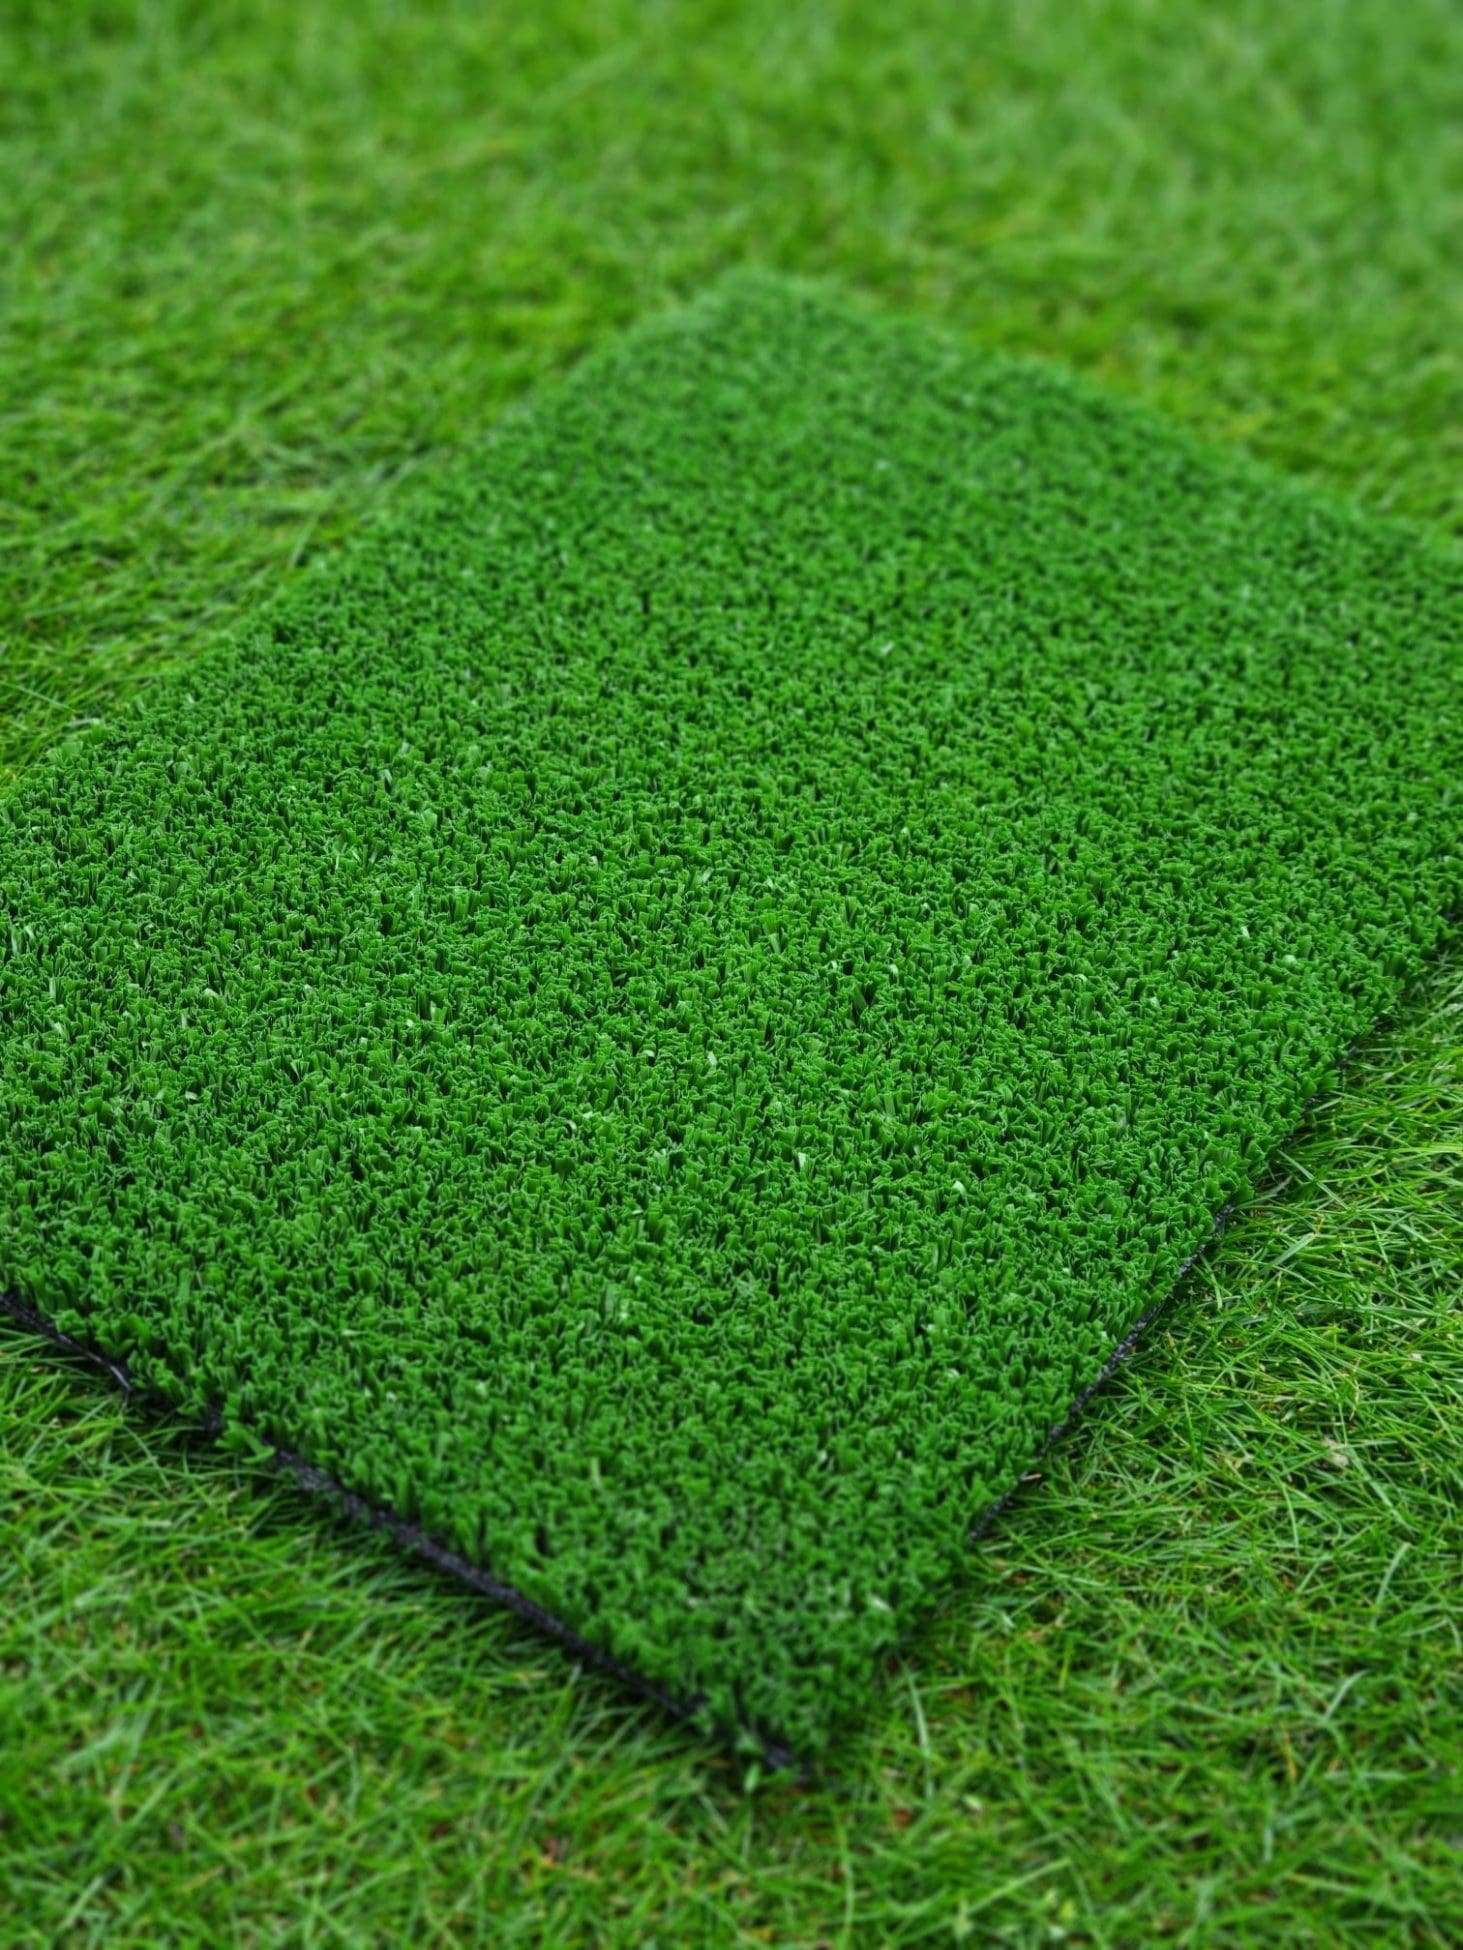 Test Pitch Artificial Grass